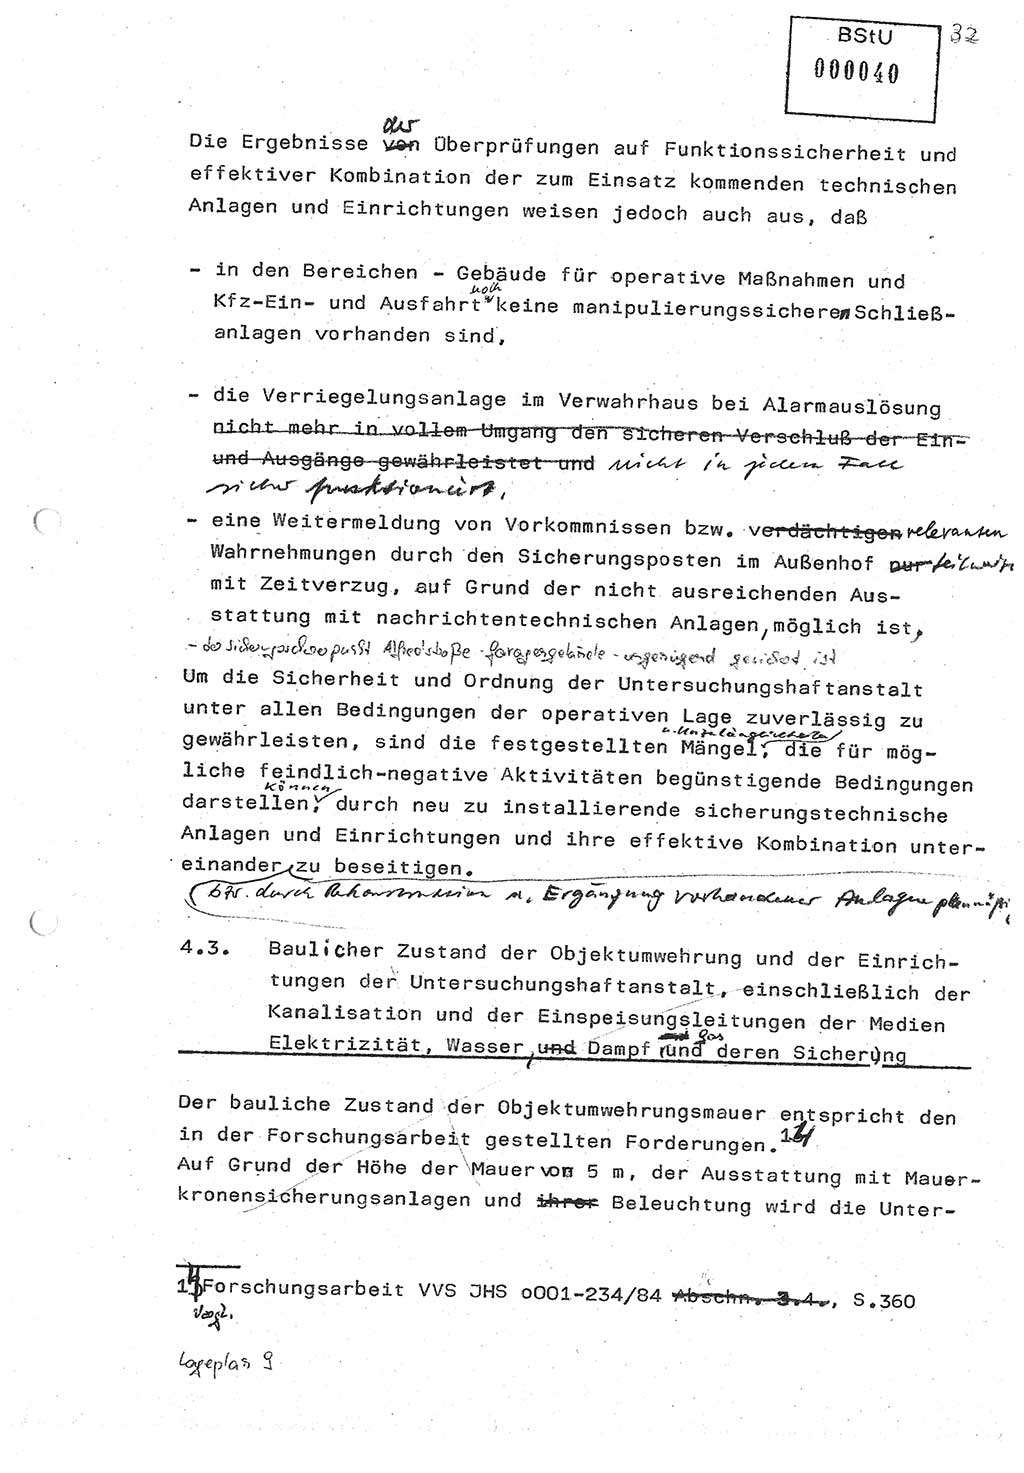 Diplomarbeit (Entwurf) Oberleutnant Peter Parke (Abt. ⅩⅣ), Ministerium für Staatssicherheit (MfS) [Deutsche Demokratische Republik (DDR)], Juristische Hochschule (JHS), Geheime Verschlußsache (GVS) o001-98/86, Potsdam 1986, Seite 40 (Dipl.-Arb. MfS DDR JHS GVS o001-98/86 1986, S. 40)